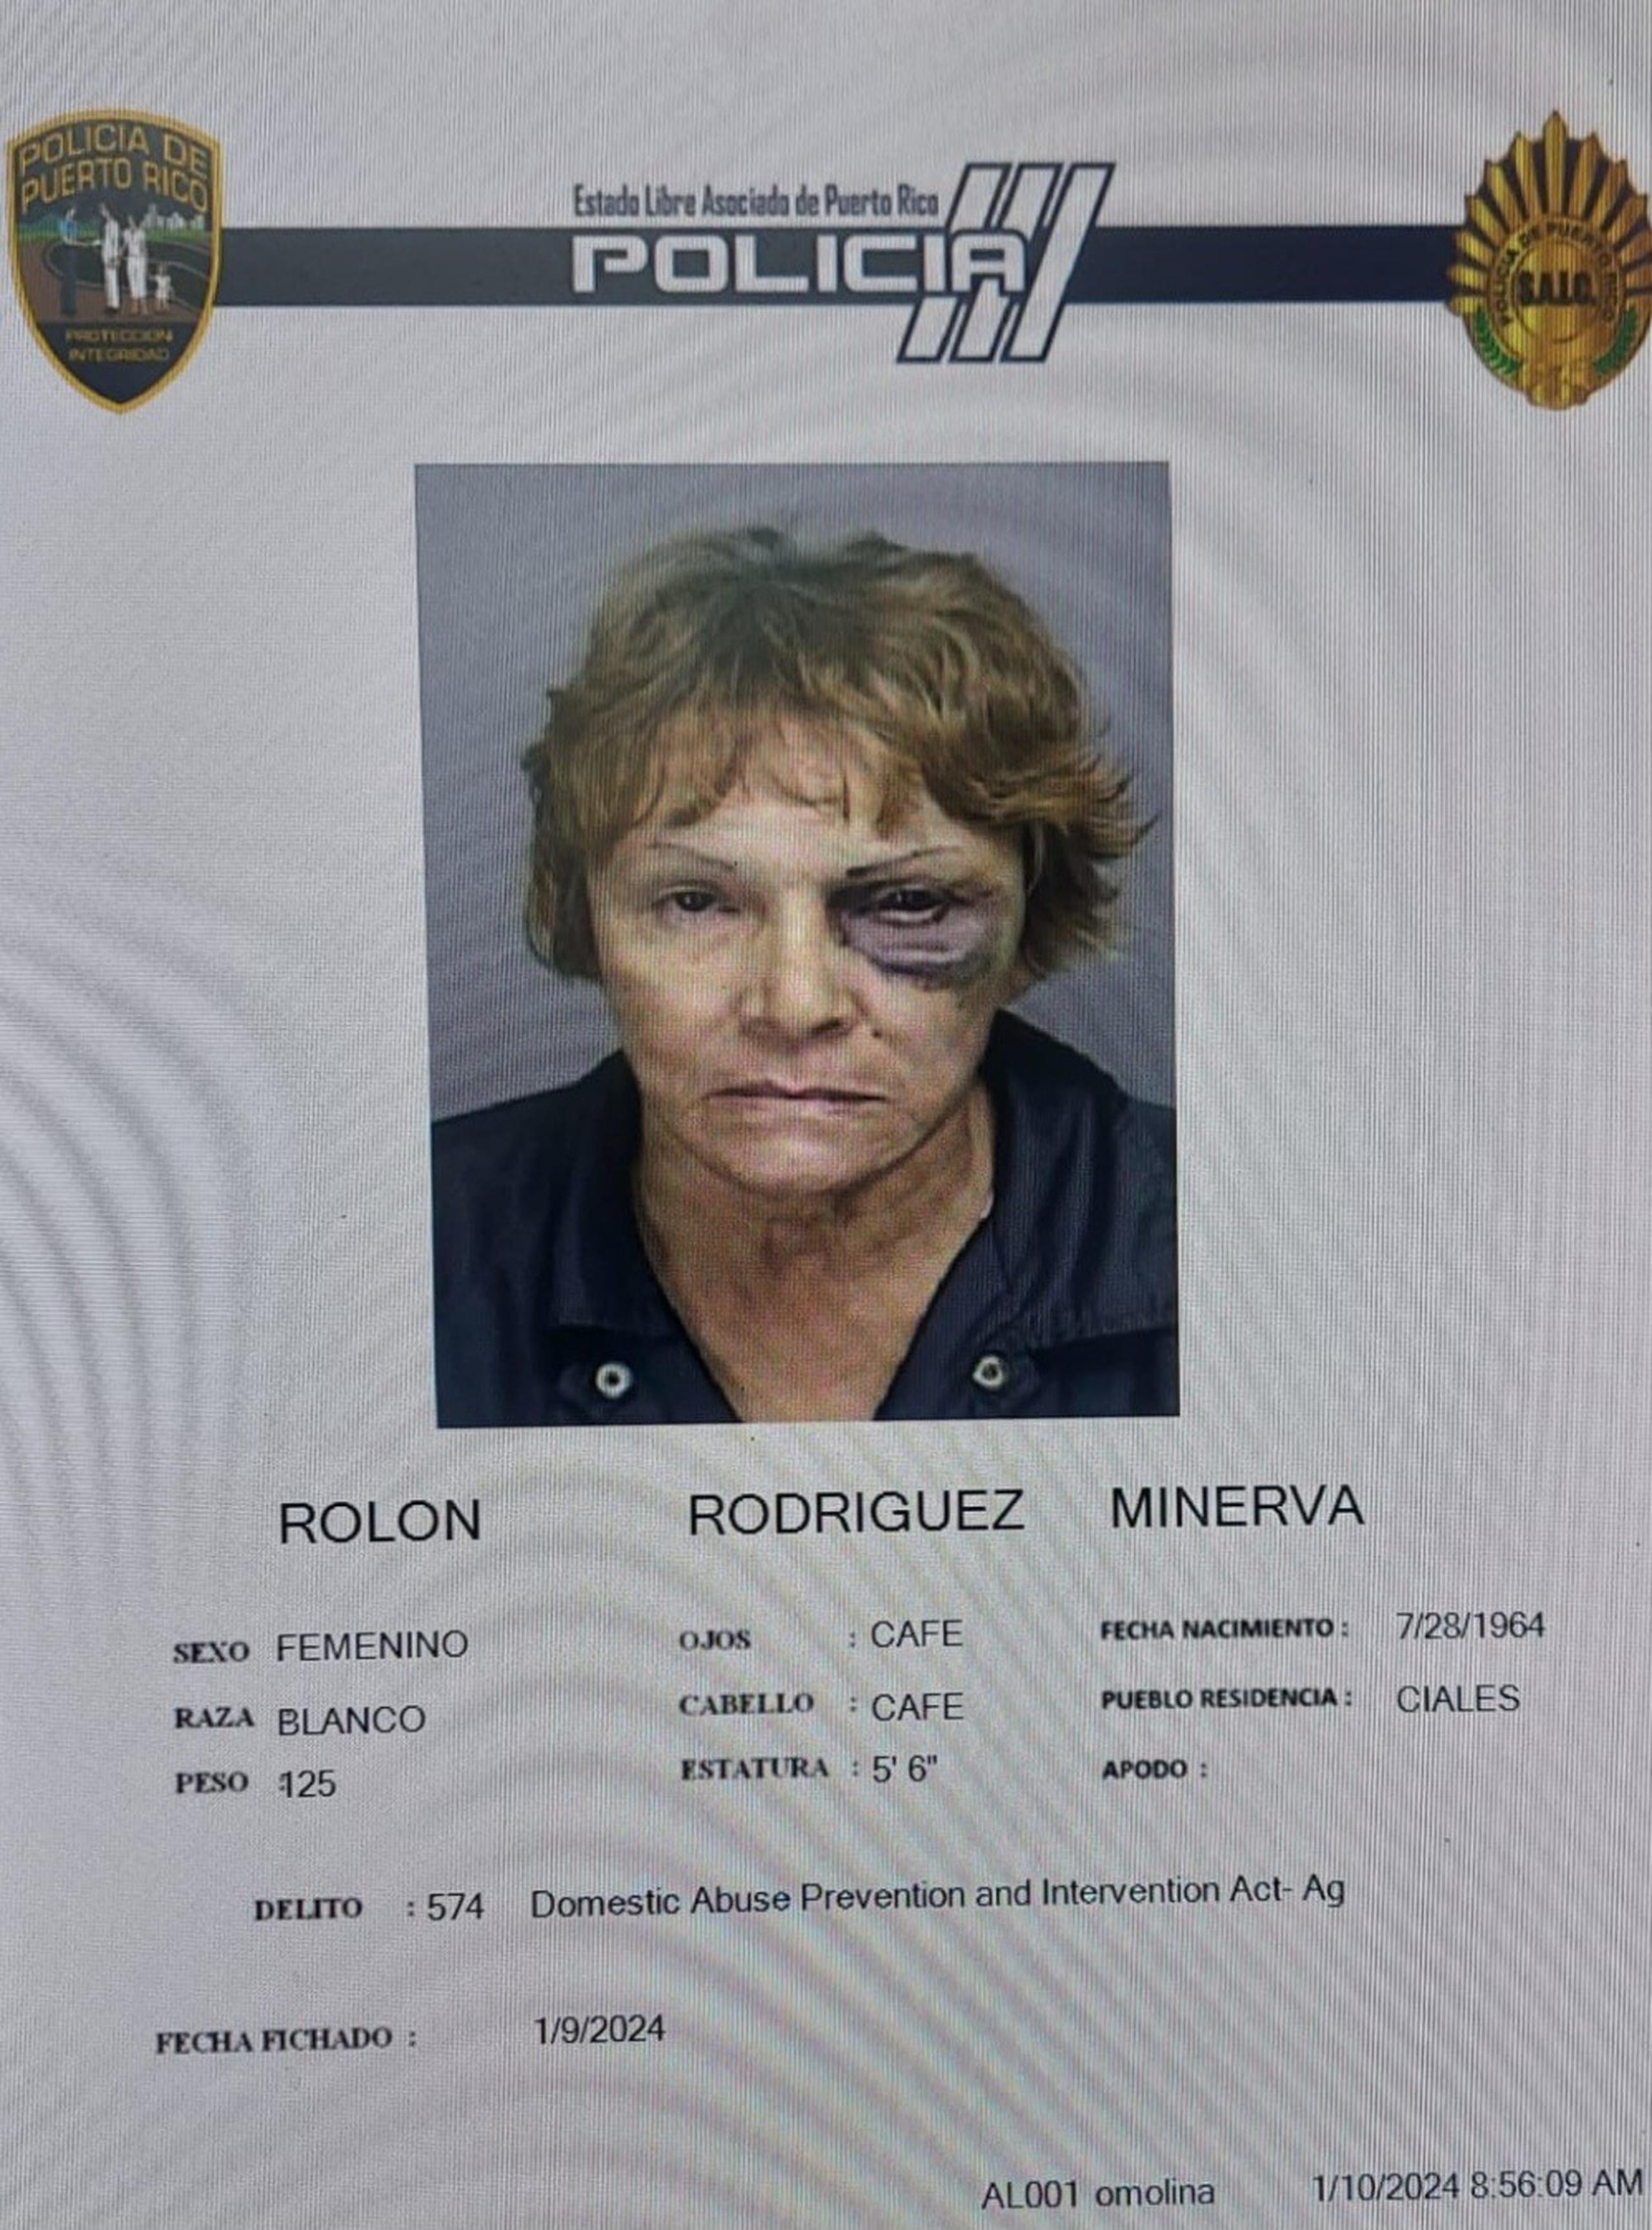 Minerva Rolón Rodríguez enfrenta cargos por violación a la Ley de Armas y violencia doméstica.